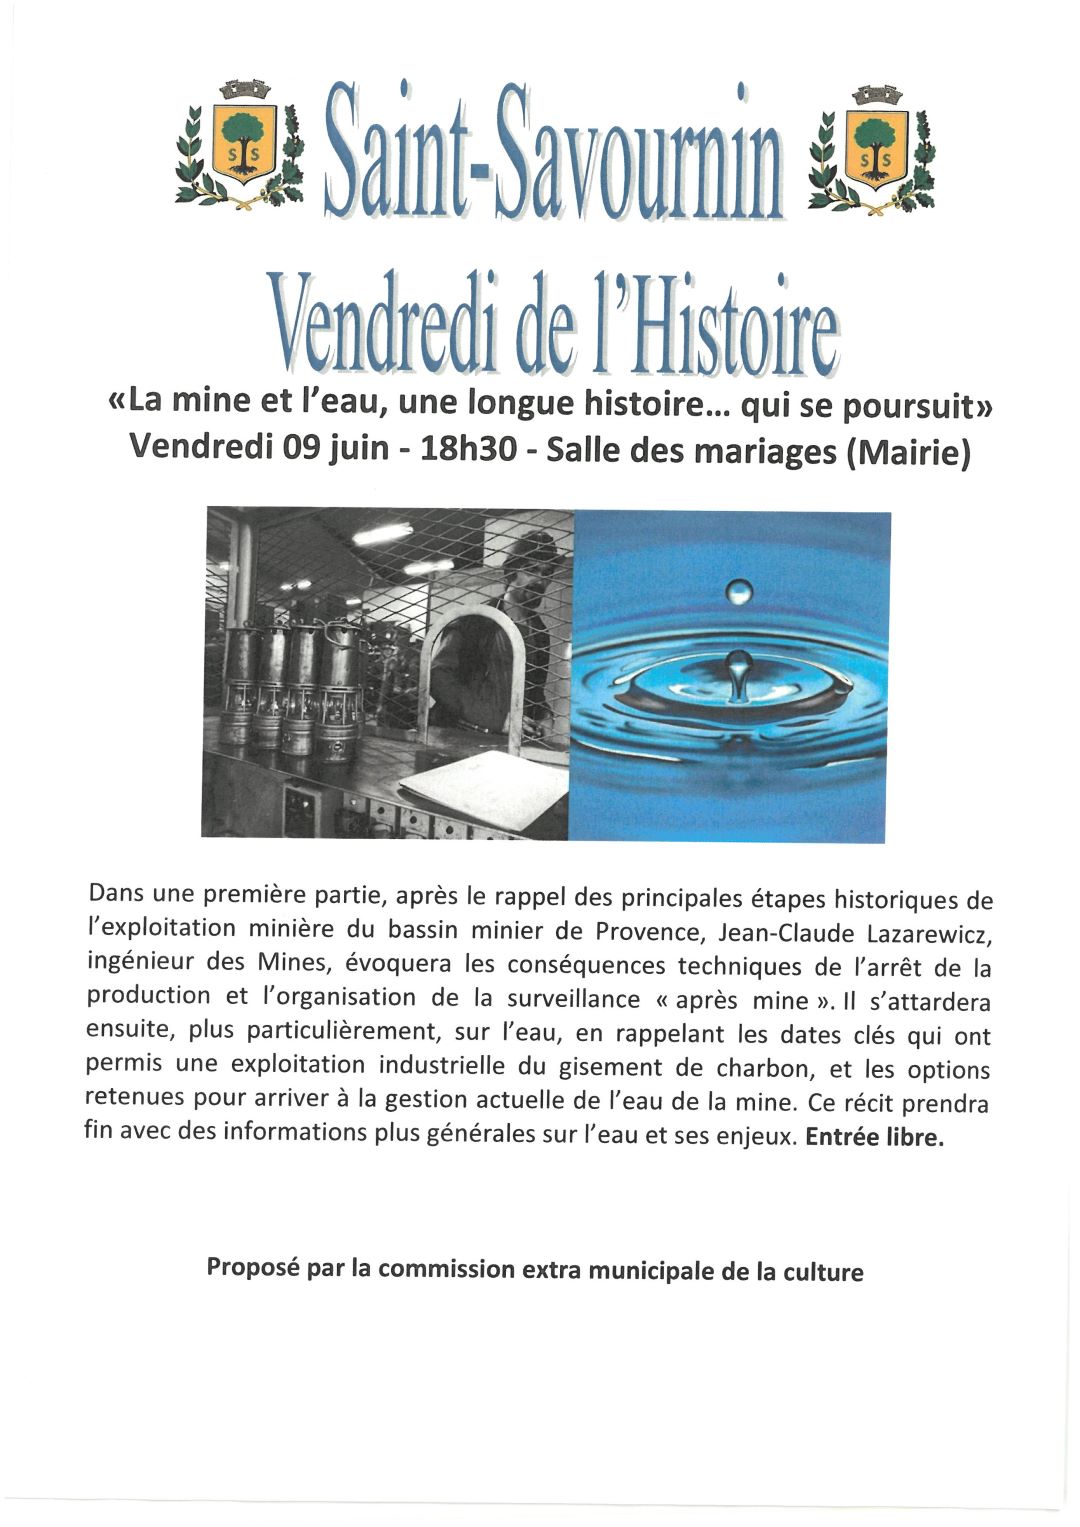 mairie Saint Savournin présentation mine et l'eau 9 juin 18h30 Vendredis de l'Histoire - salle des mariages